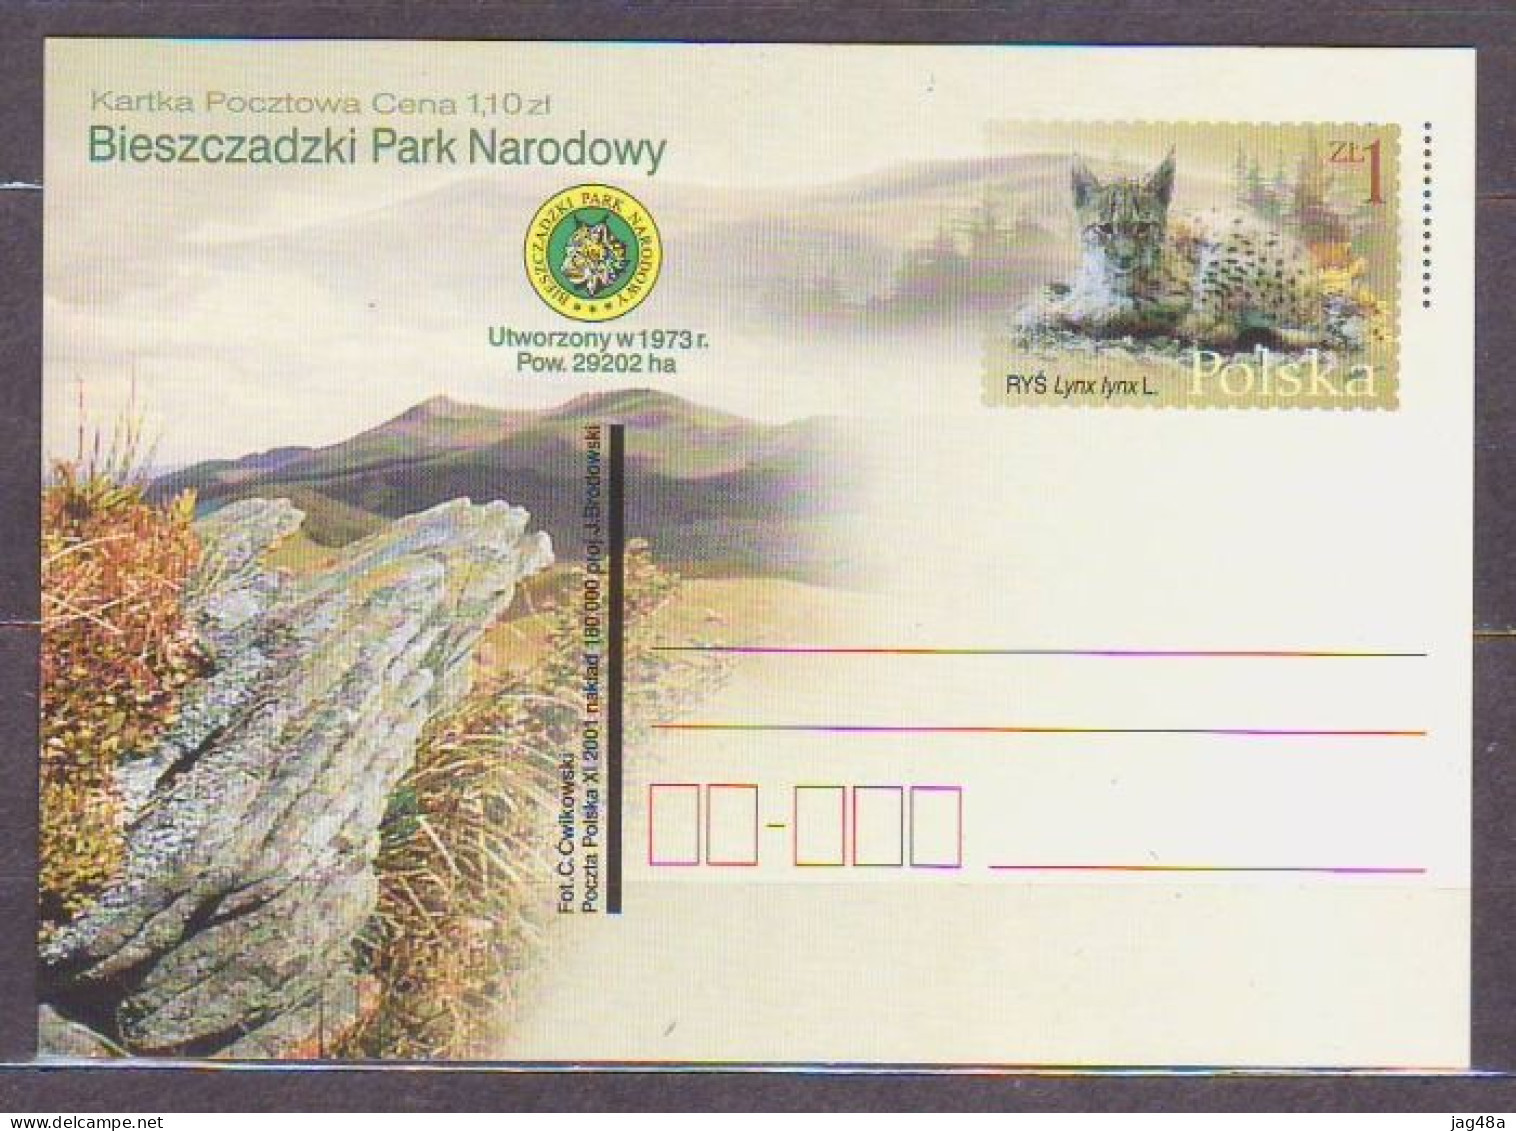 POLAND. 2001/Bieszczadzki Park Narodowy - Eurasian Lynx - PostCard/unused. - Neufs